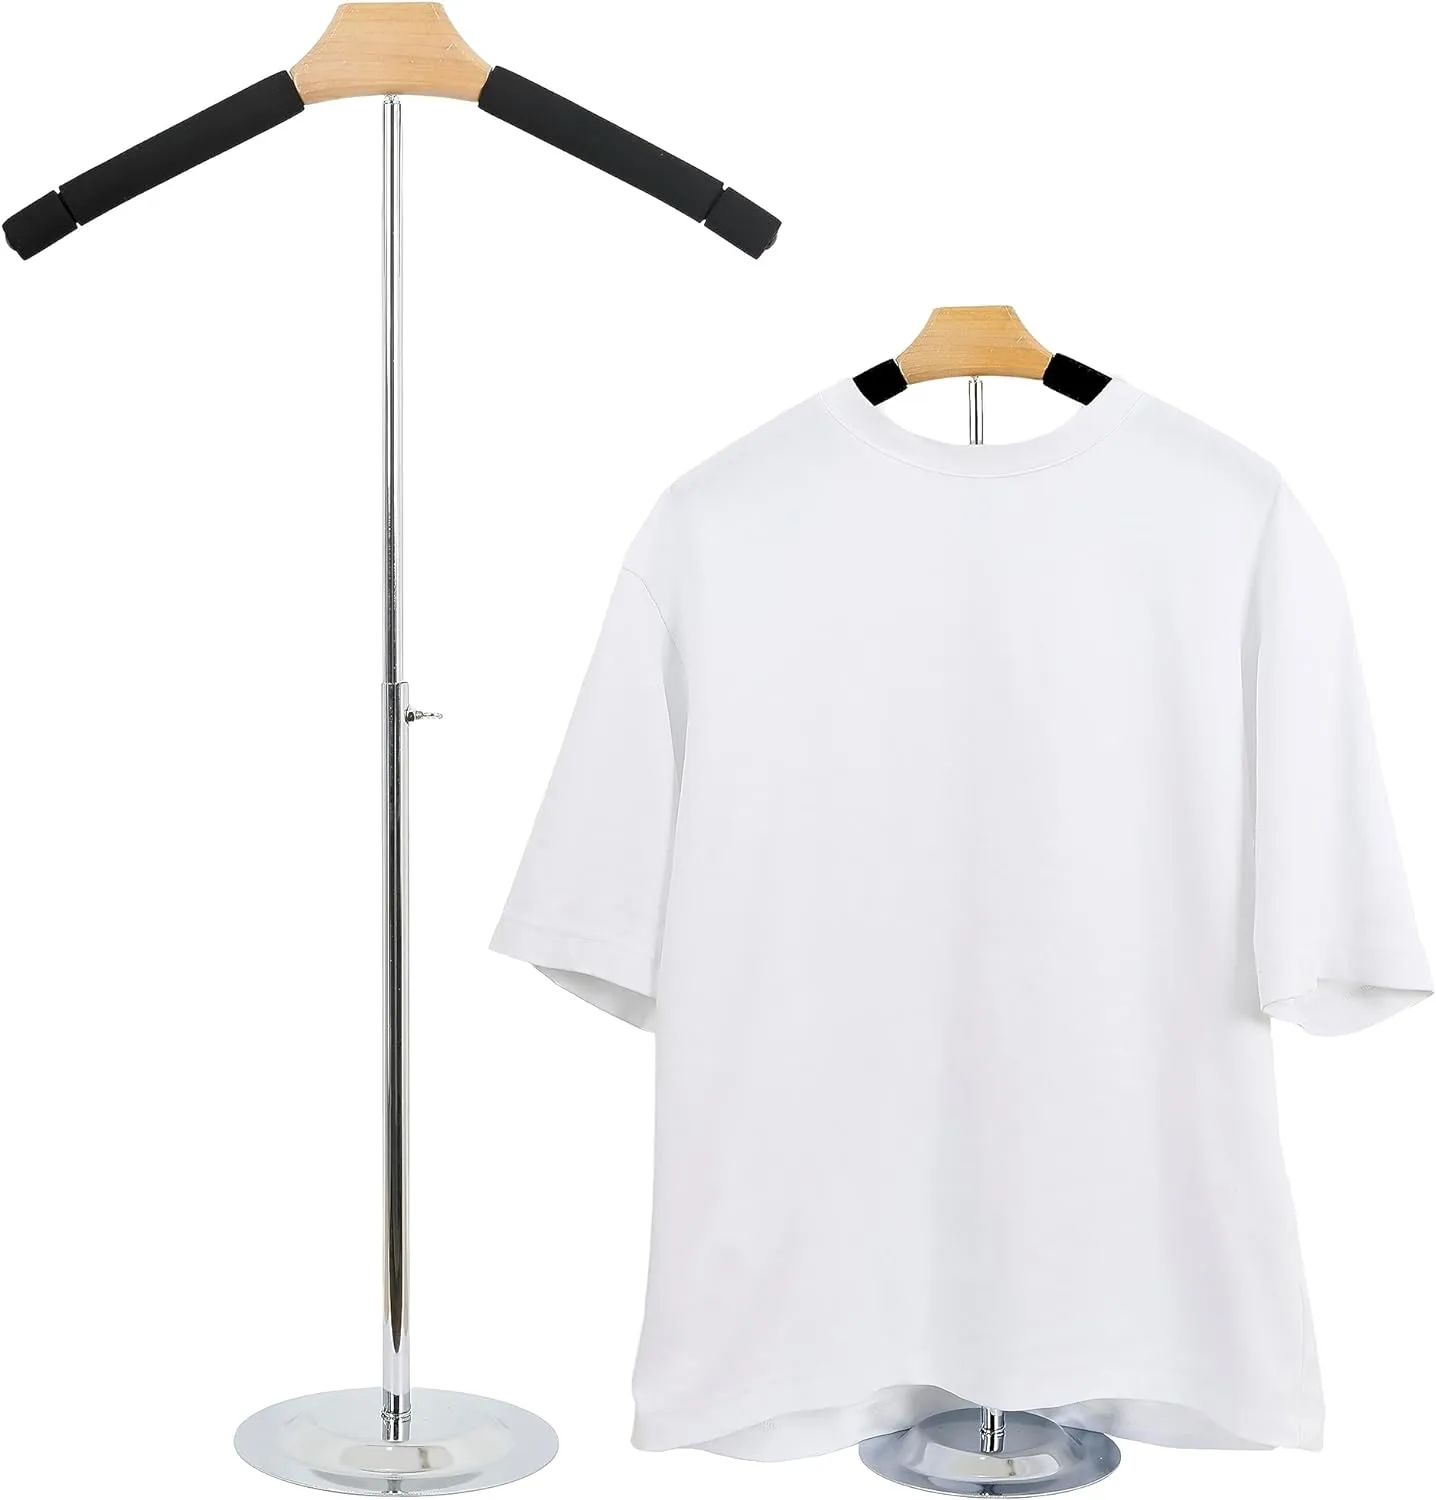 Verstellbarer T-Shirt-Präsentationsständer – tragbarer Kleiderbügelständer aus schwarzem Metall für Hemden und Mäntel